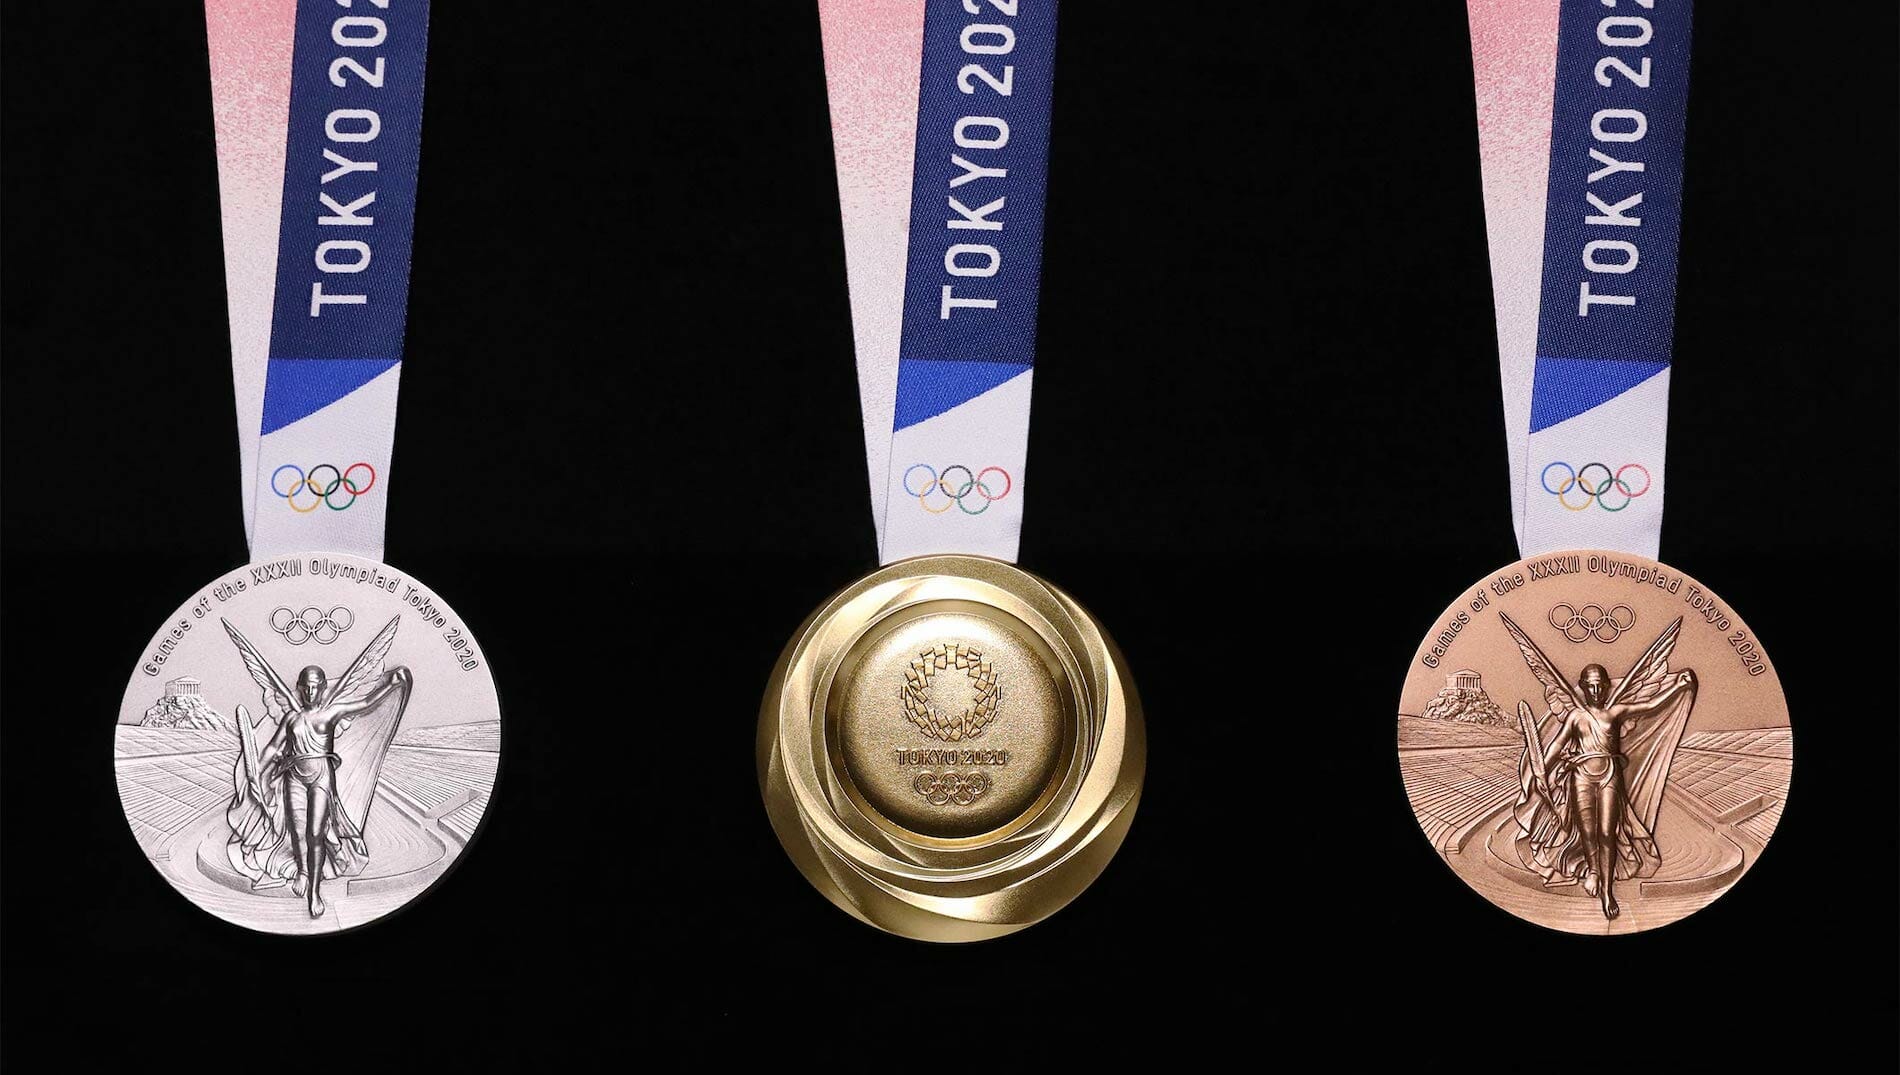 Medali Olimpiade Tokyo 2020 akan diproduksi dengan gadget daur ulang